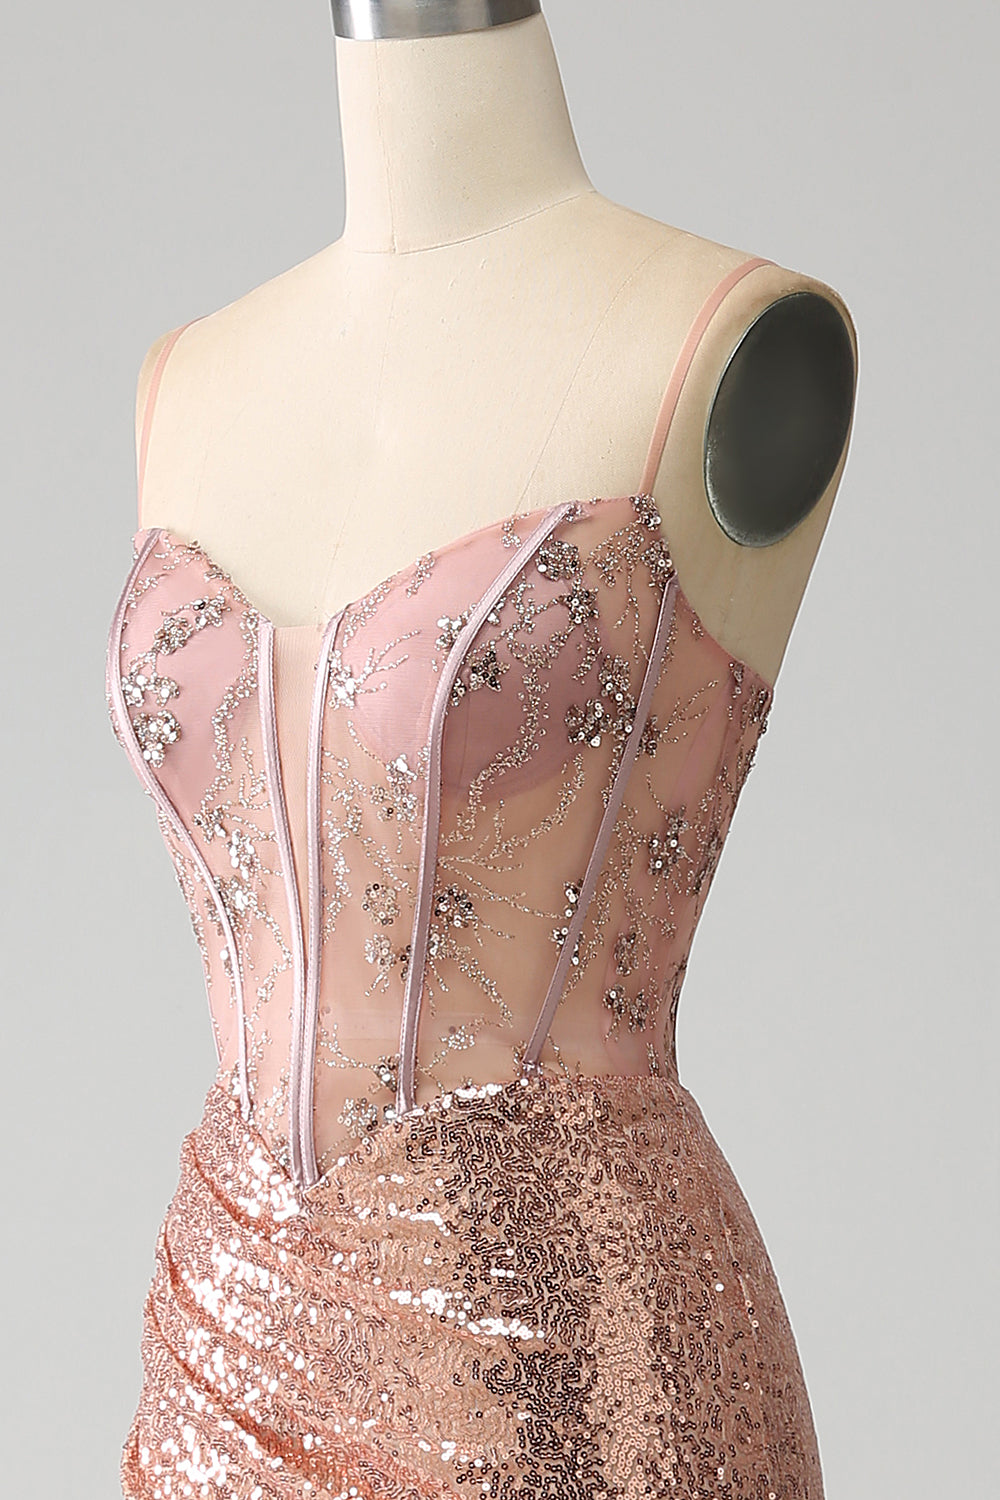 Robe de bal corset à paillettes froncées sirène or rose avec fente latérale